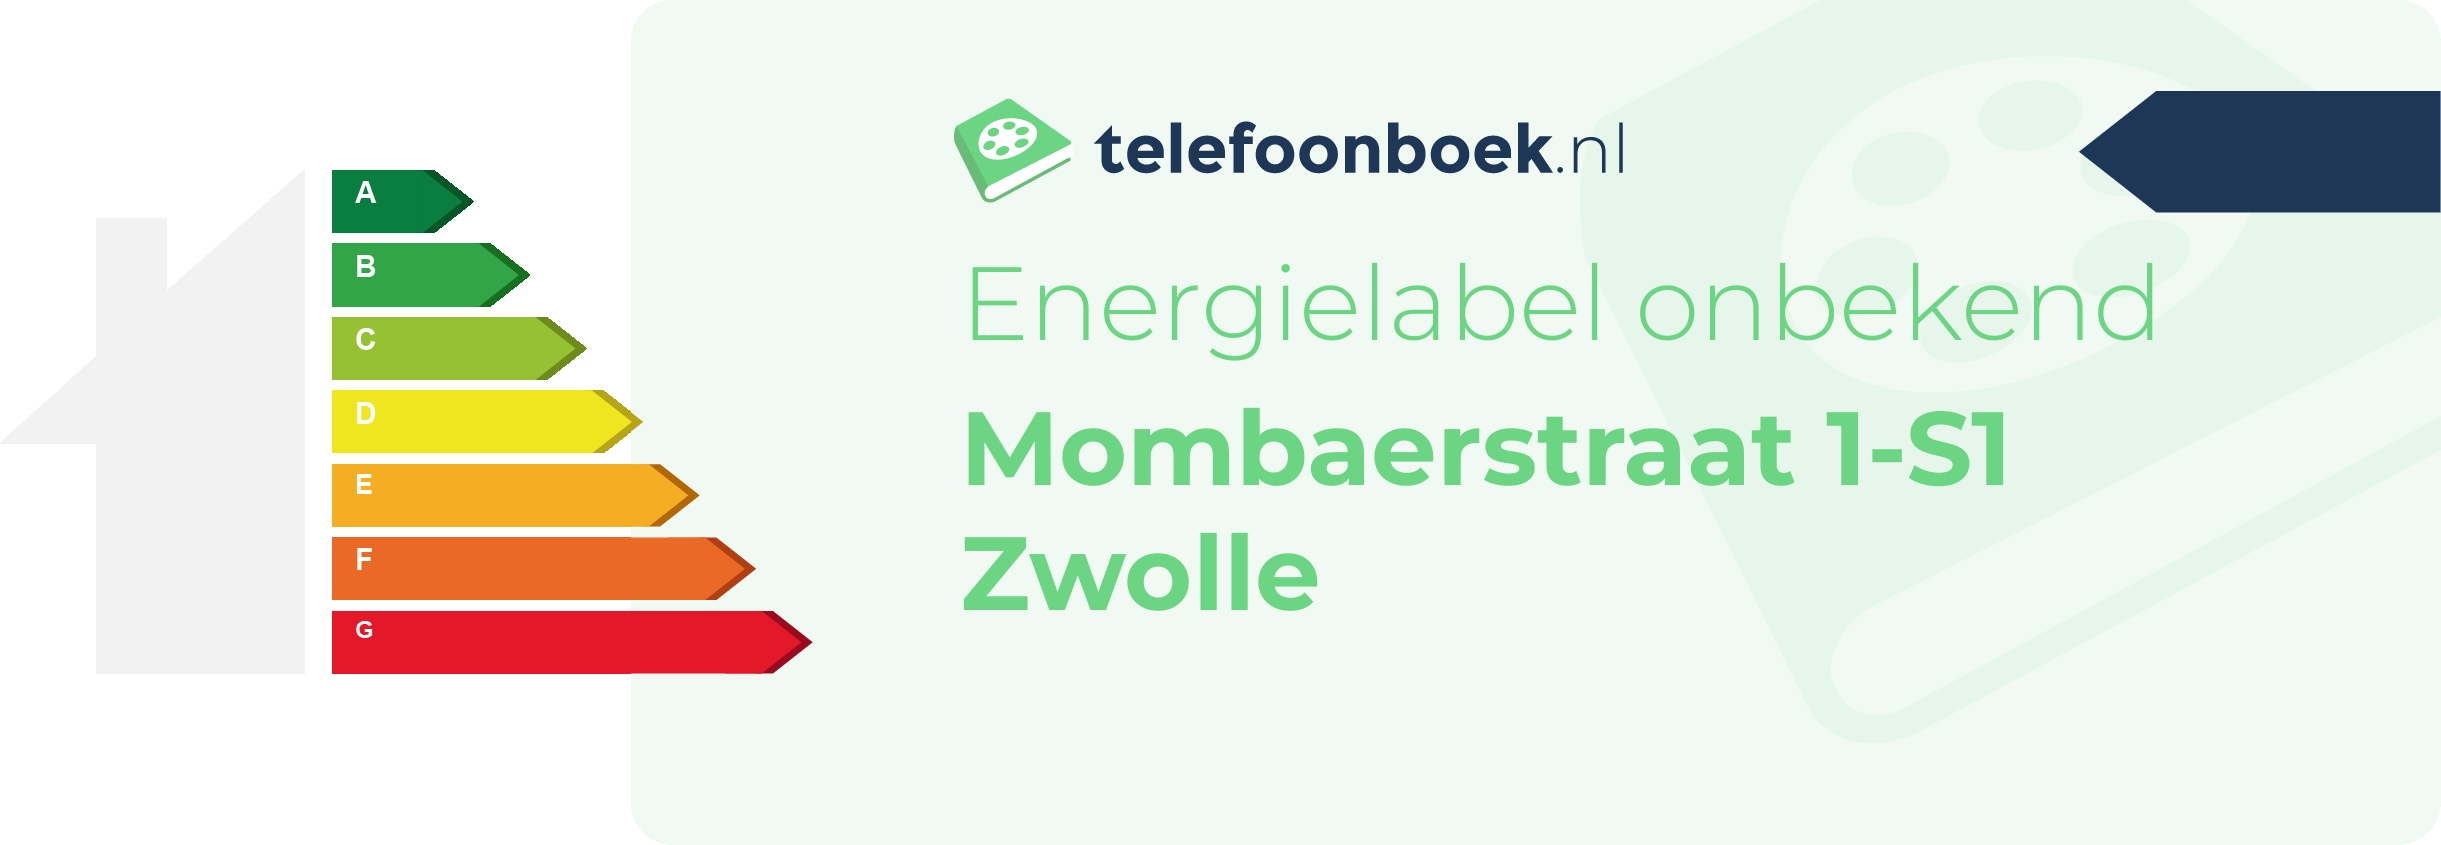 Energielabel Mombaerstraat 1-S1 Zwolle